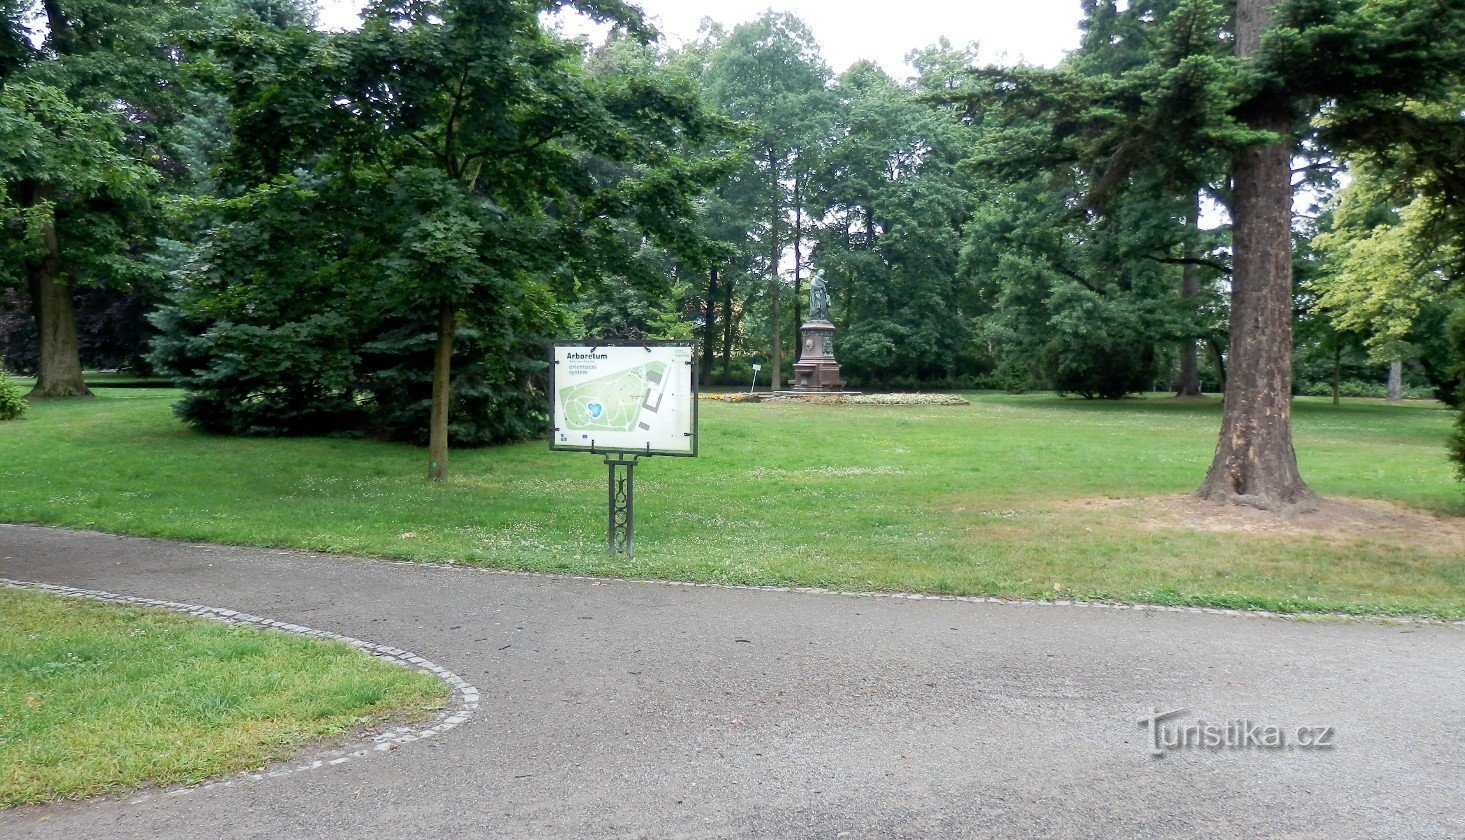 Placa de orientação com a designação de árvores e arbustos plantados, ao fundo a escultura de Mateřsk